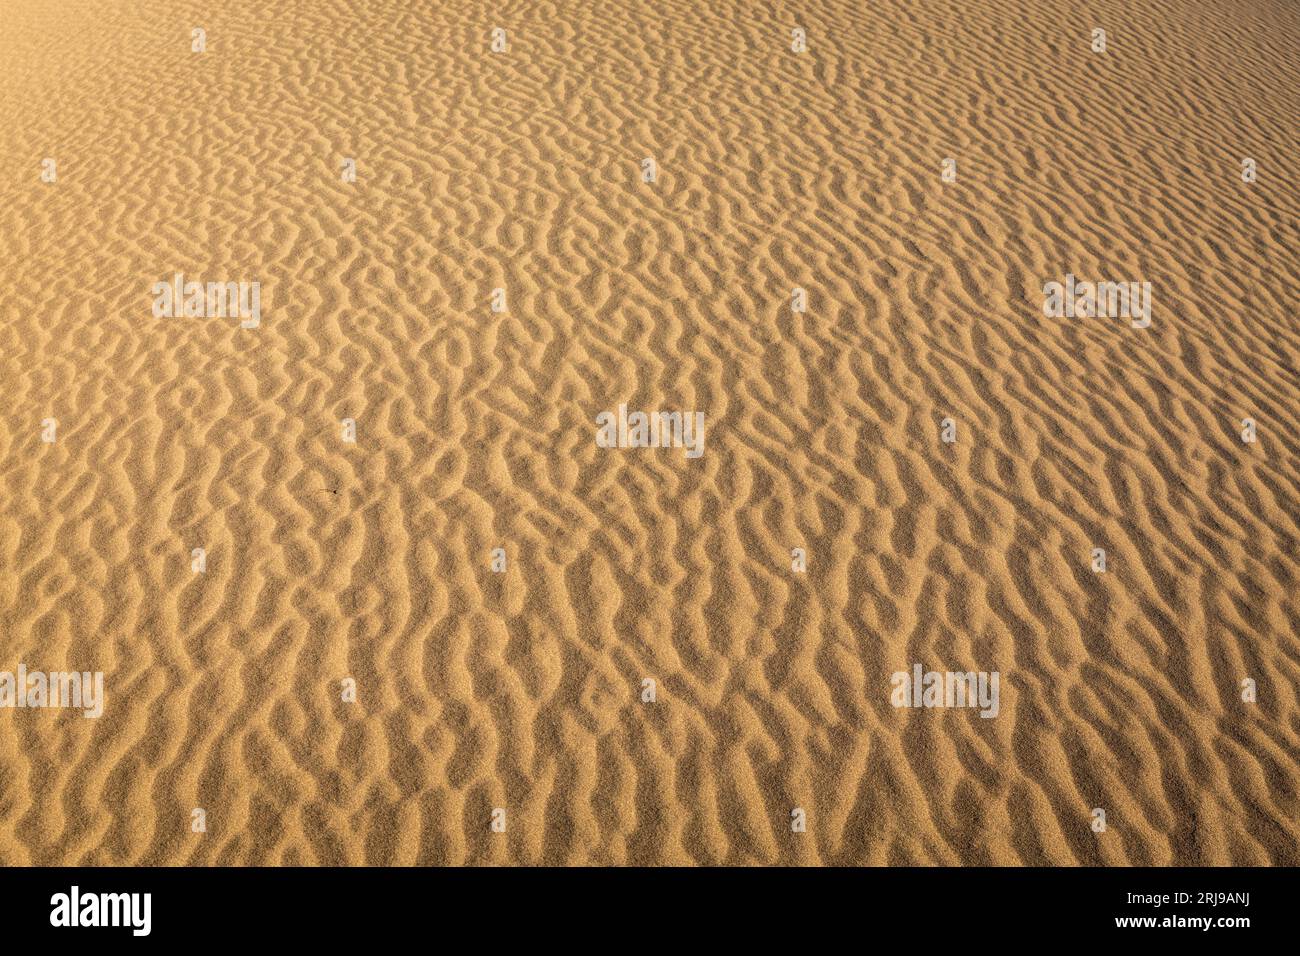 Eine weite Fläche von Wüstensand, unberührt und frei von menschlichen Aktivitäten Stockfoto